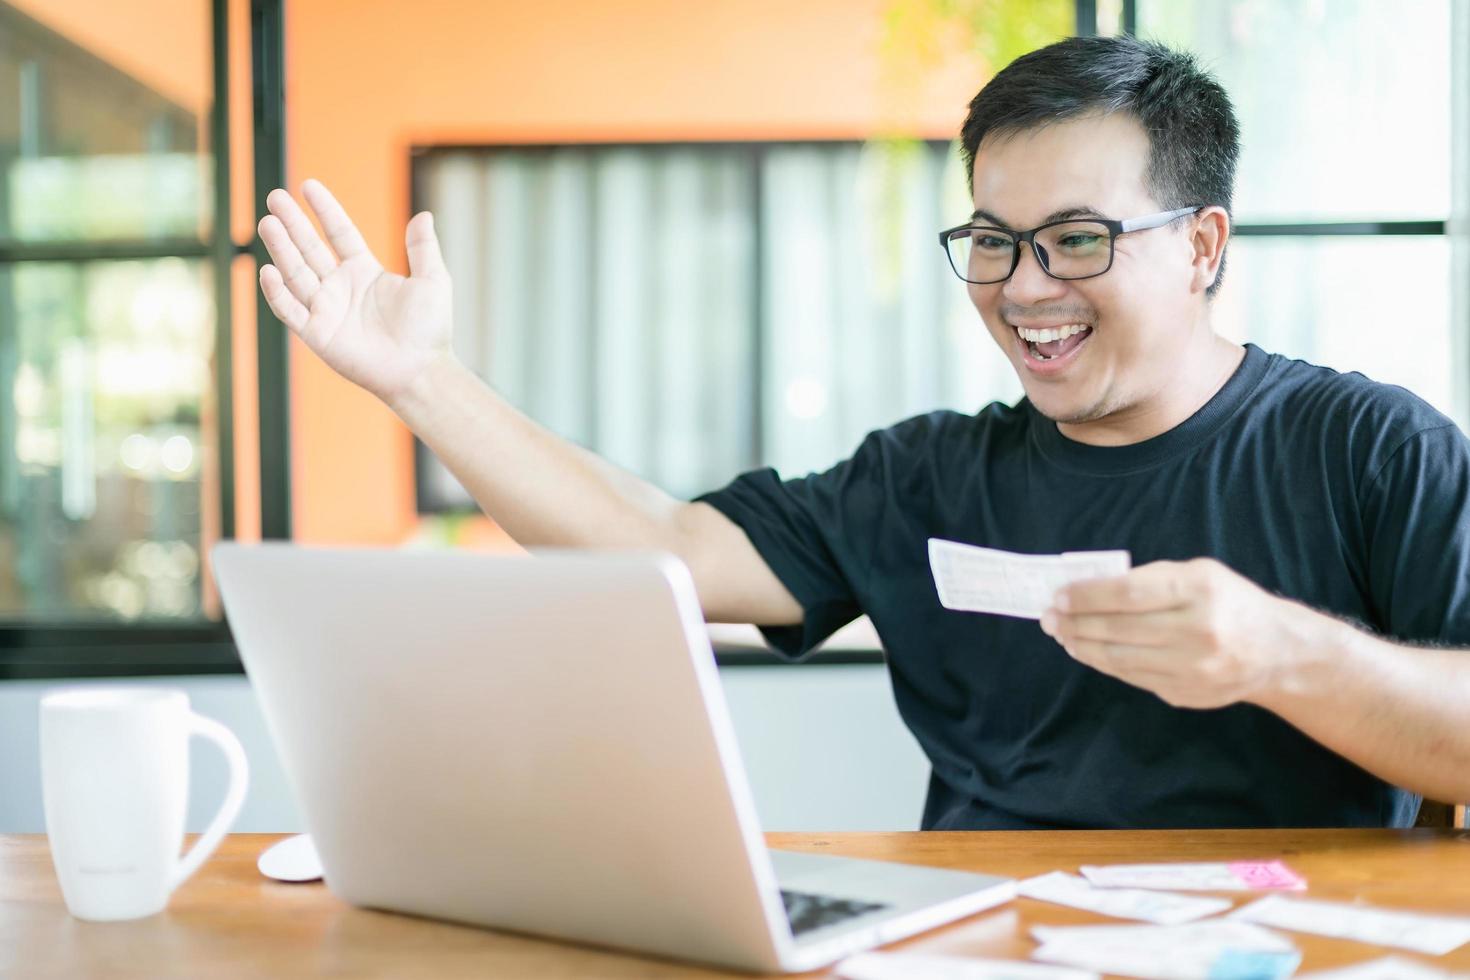 winnend overheidsloterijconcept, Thaise mensen die het resultaat van de Thaise regeringsloterij op laptop controleren en zeer gelukkige actie na het winnen foto